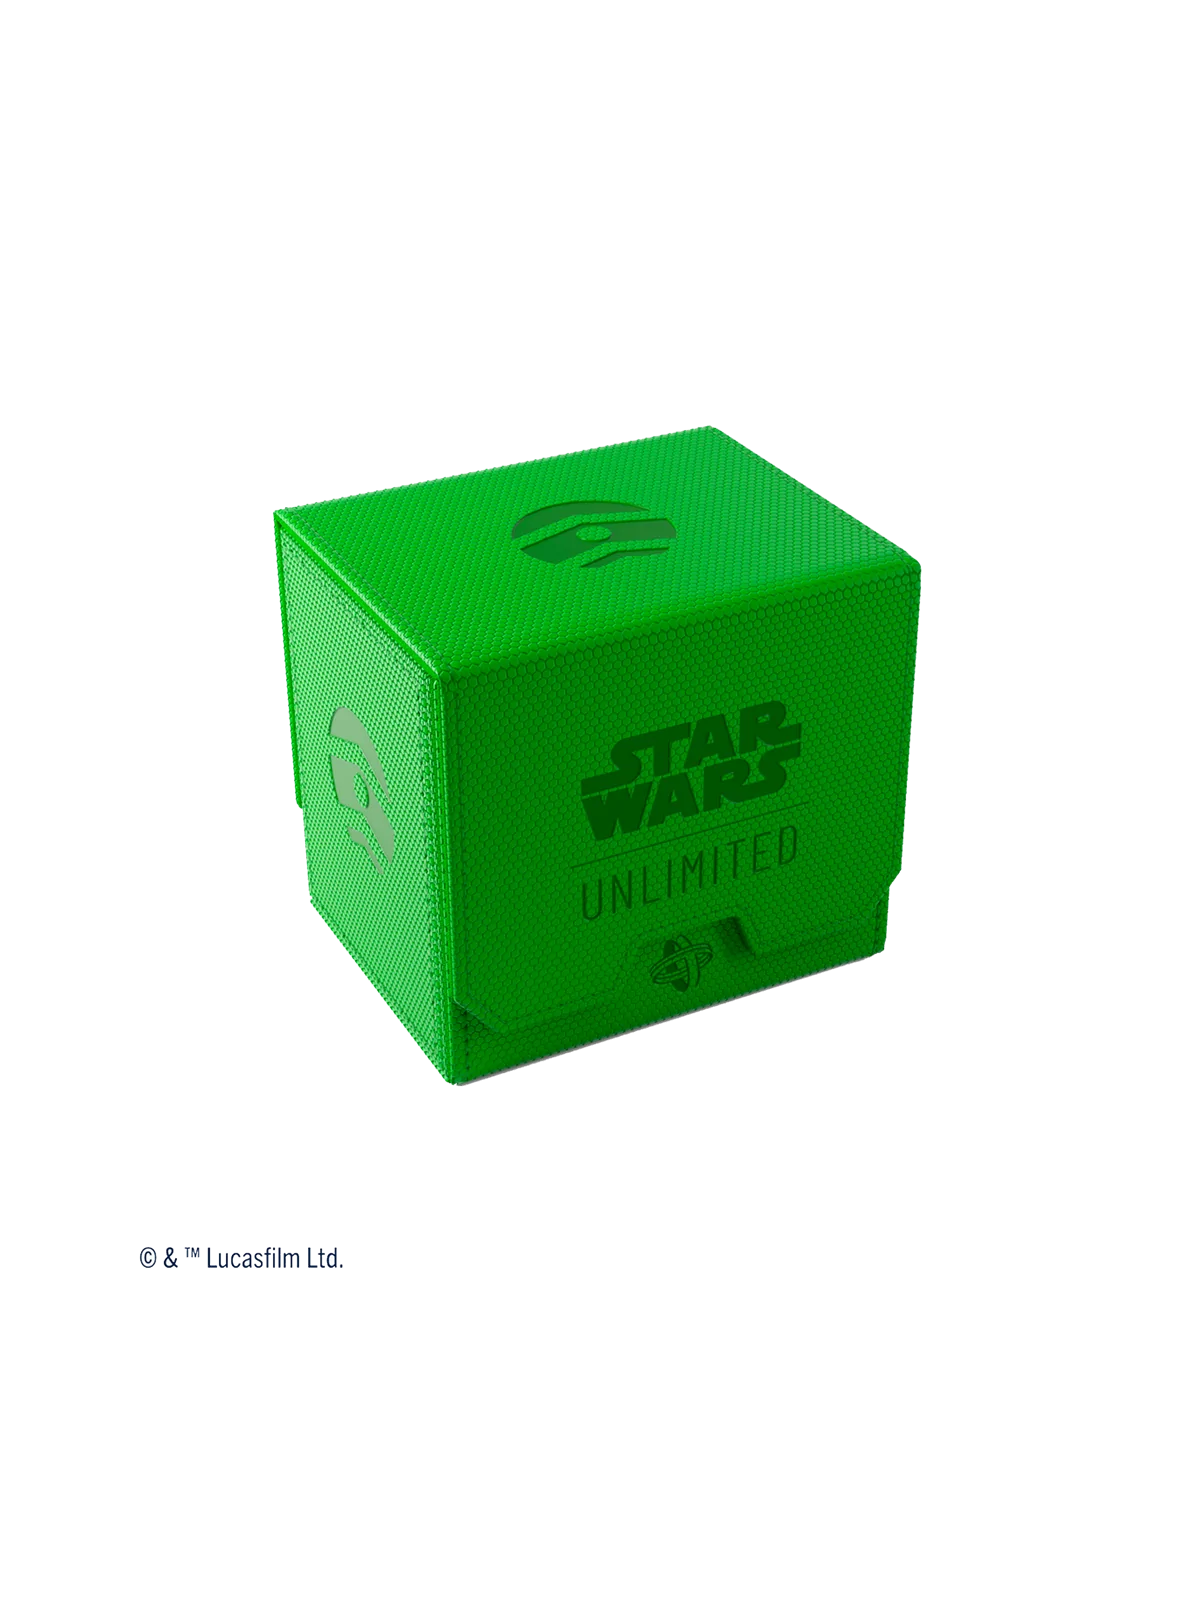 Comprar Star Wars Unlimited: Deck Pod Green barato al mejor precio 34,